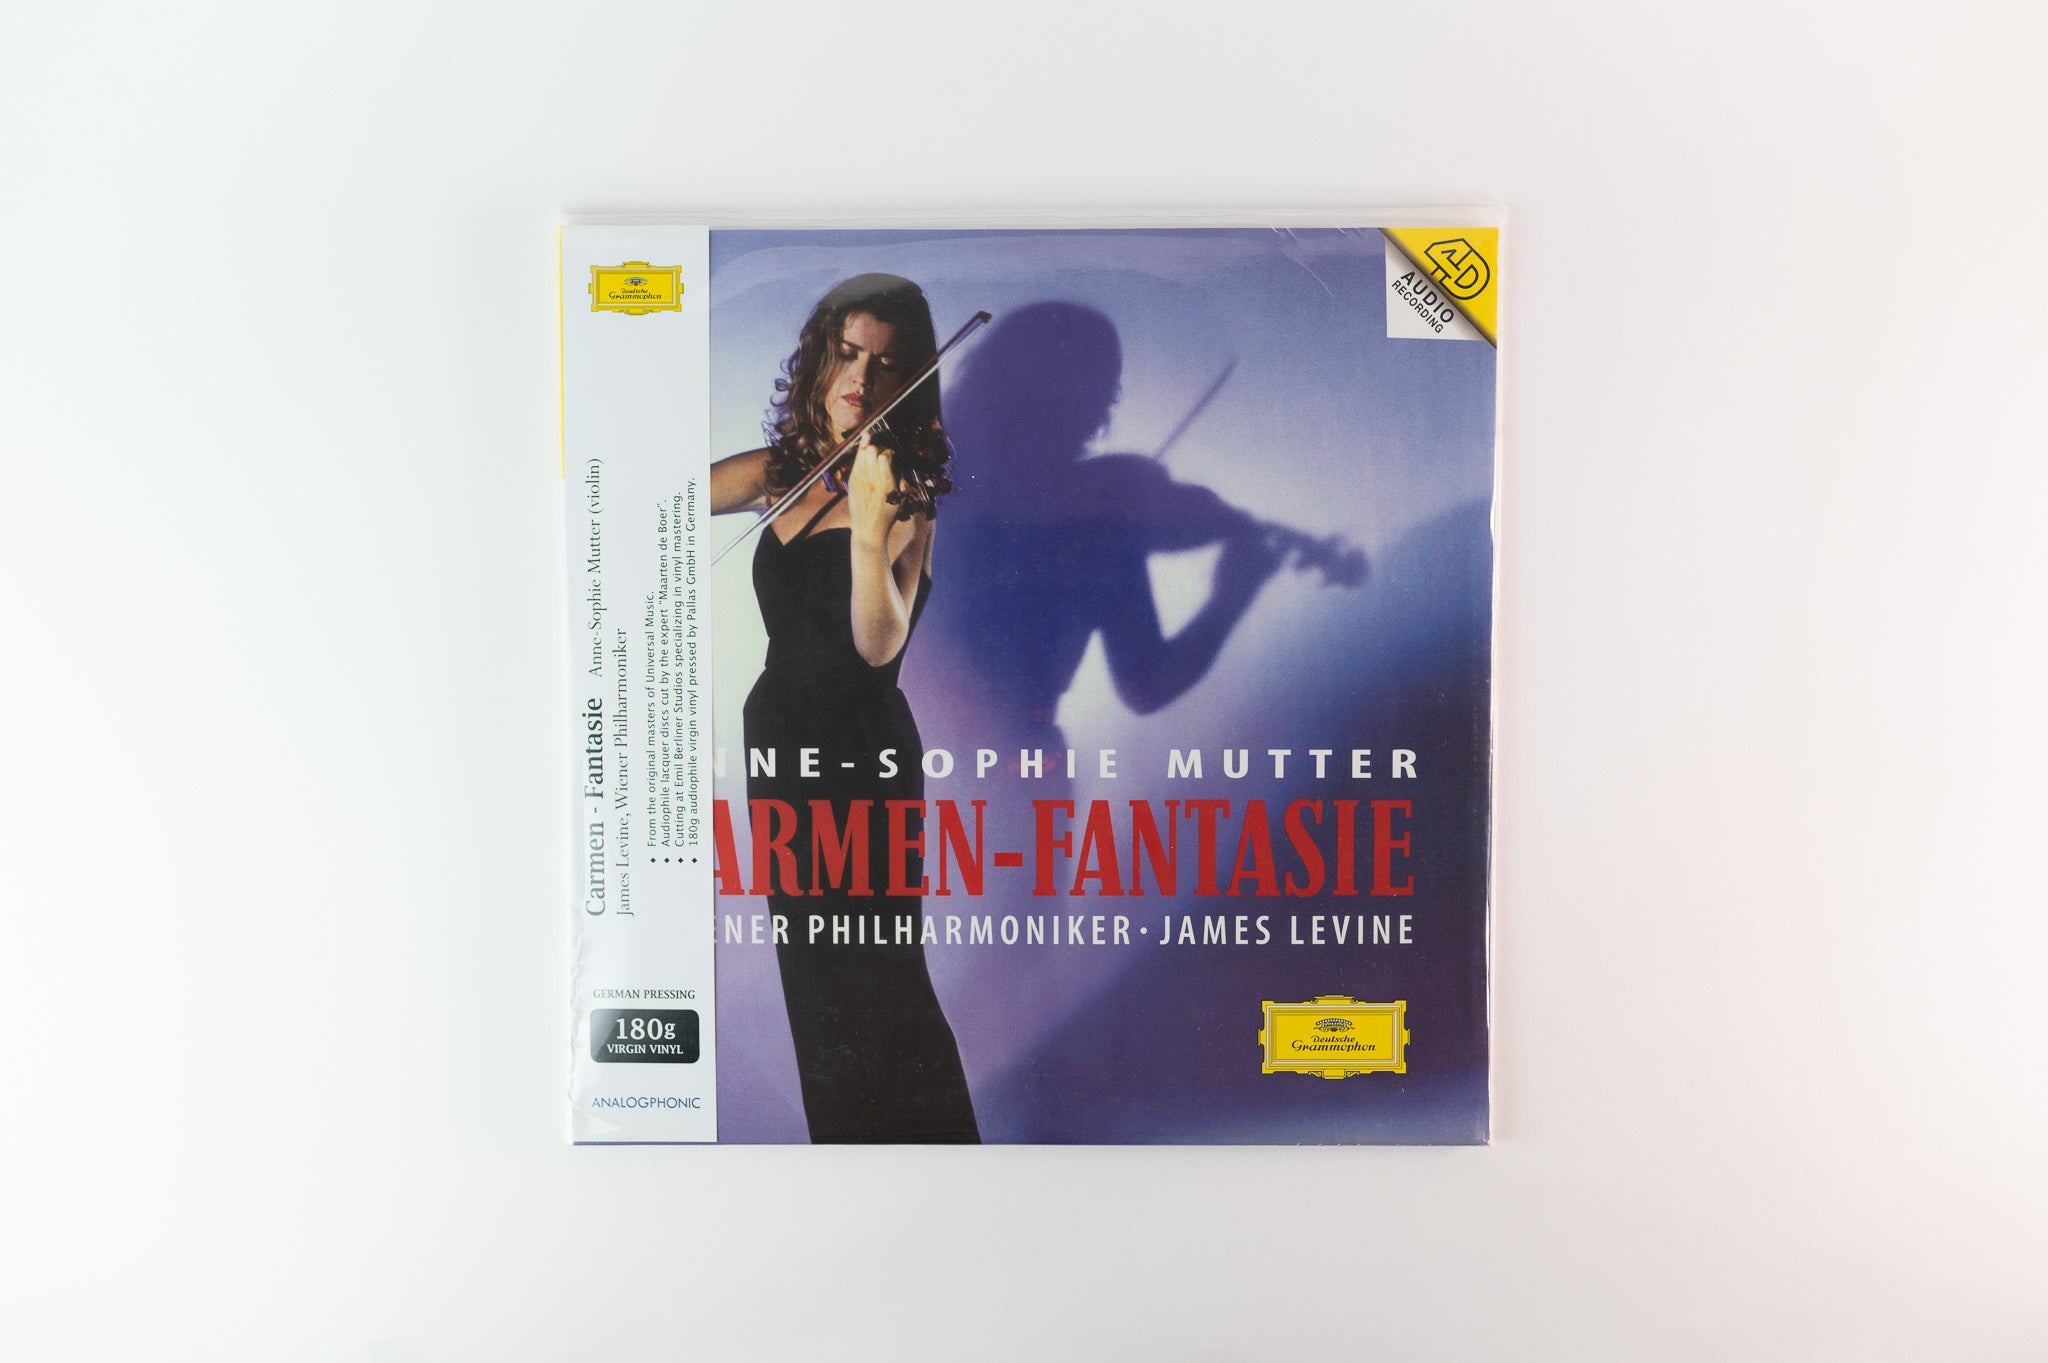 Anne-Sophie Mutter - Carmen - Fantasie on Deutsche Grammophon Analogphonic